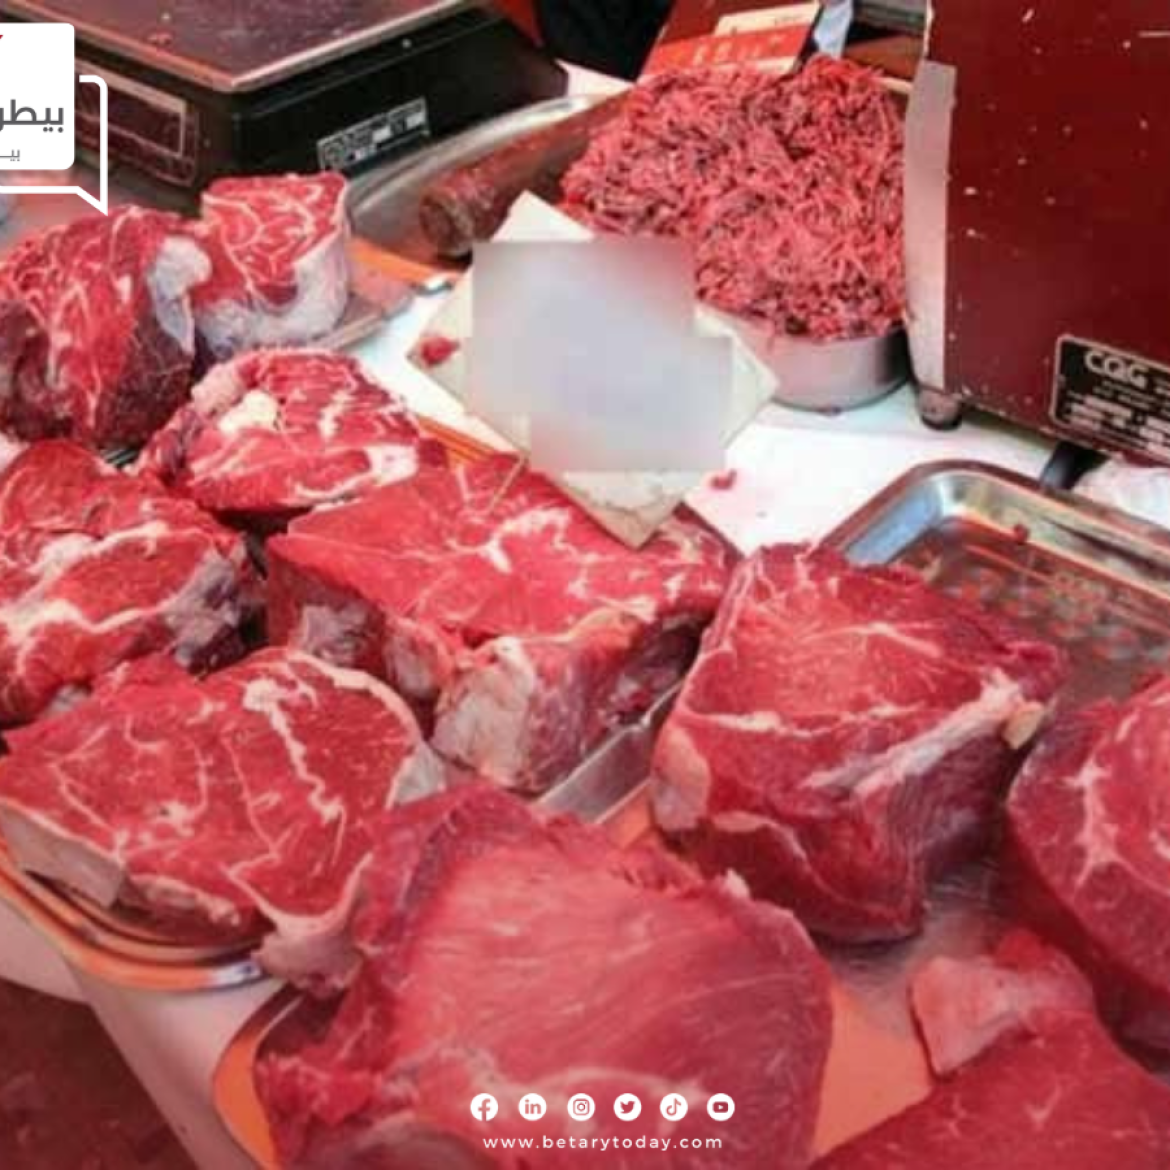 هدوء مؤقت في أسعار اللحوم الحمراء البلدي والمستوردة اليوم الخميس في الأسواق